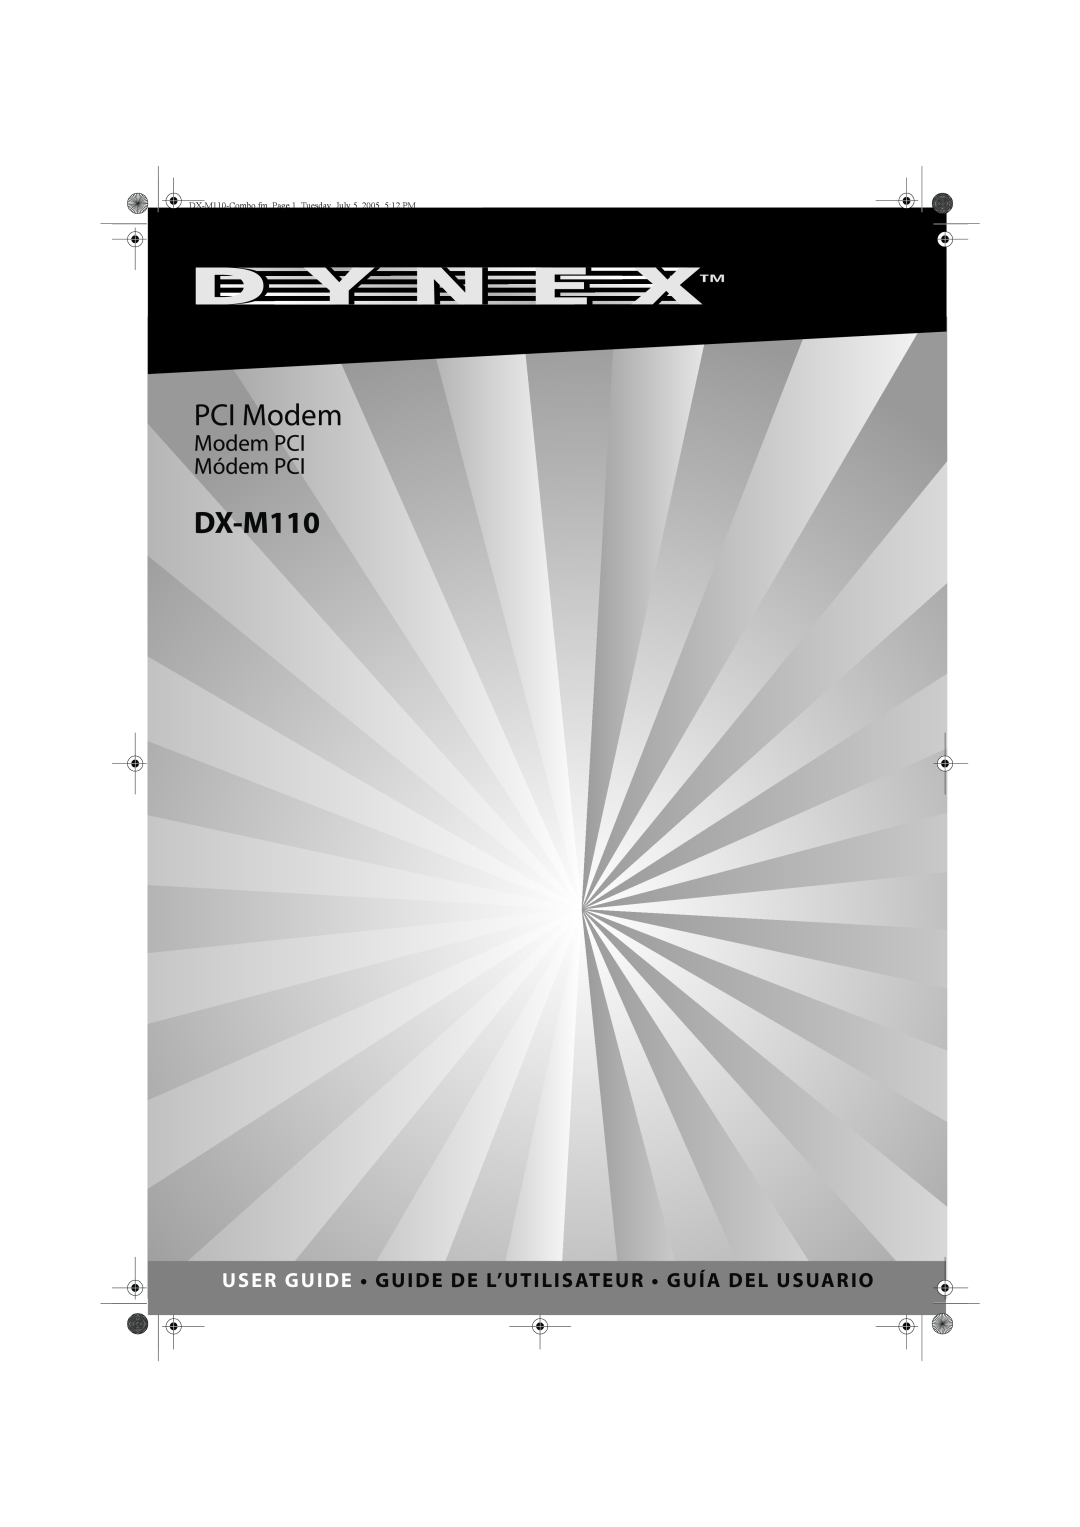 Dynex DX-M110 manual PCI Modem, Modem PCI Módem PCI, User Guide Guide De L’Utilisateur Guía Del Usuario 